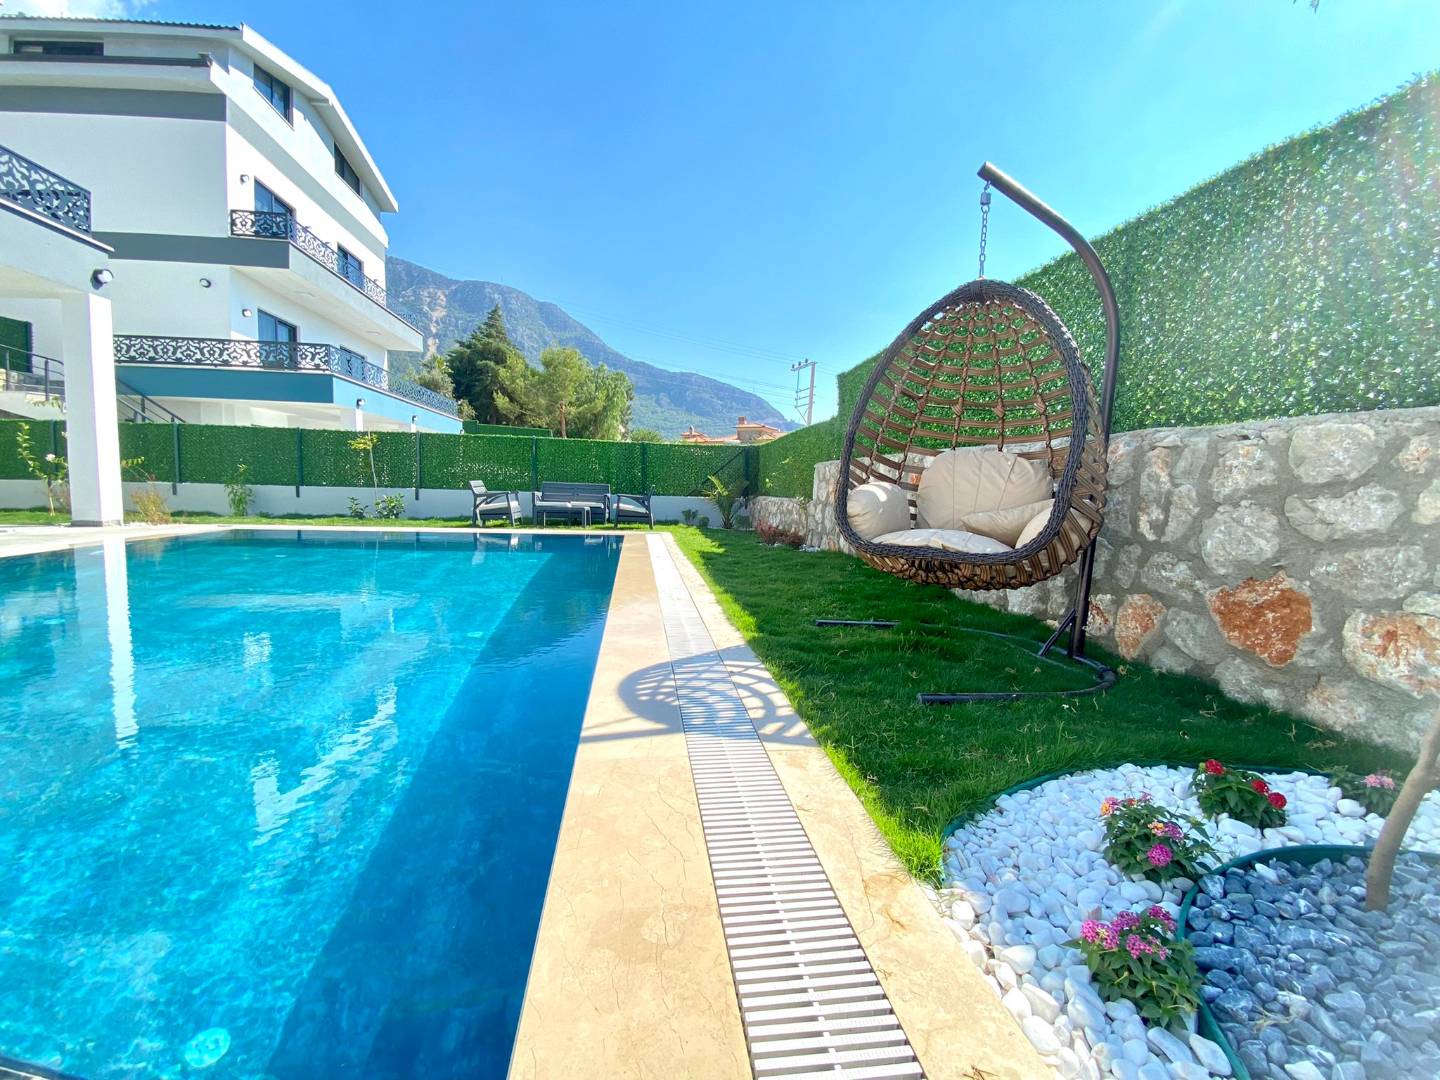 Fethiye Ölüdeniz'de Özel Havuzlu, Modern Mimarili, Lüks Kiralık Villa